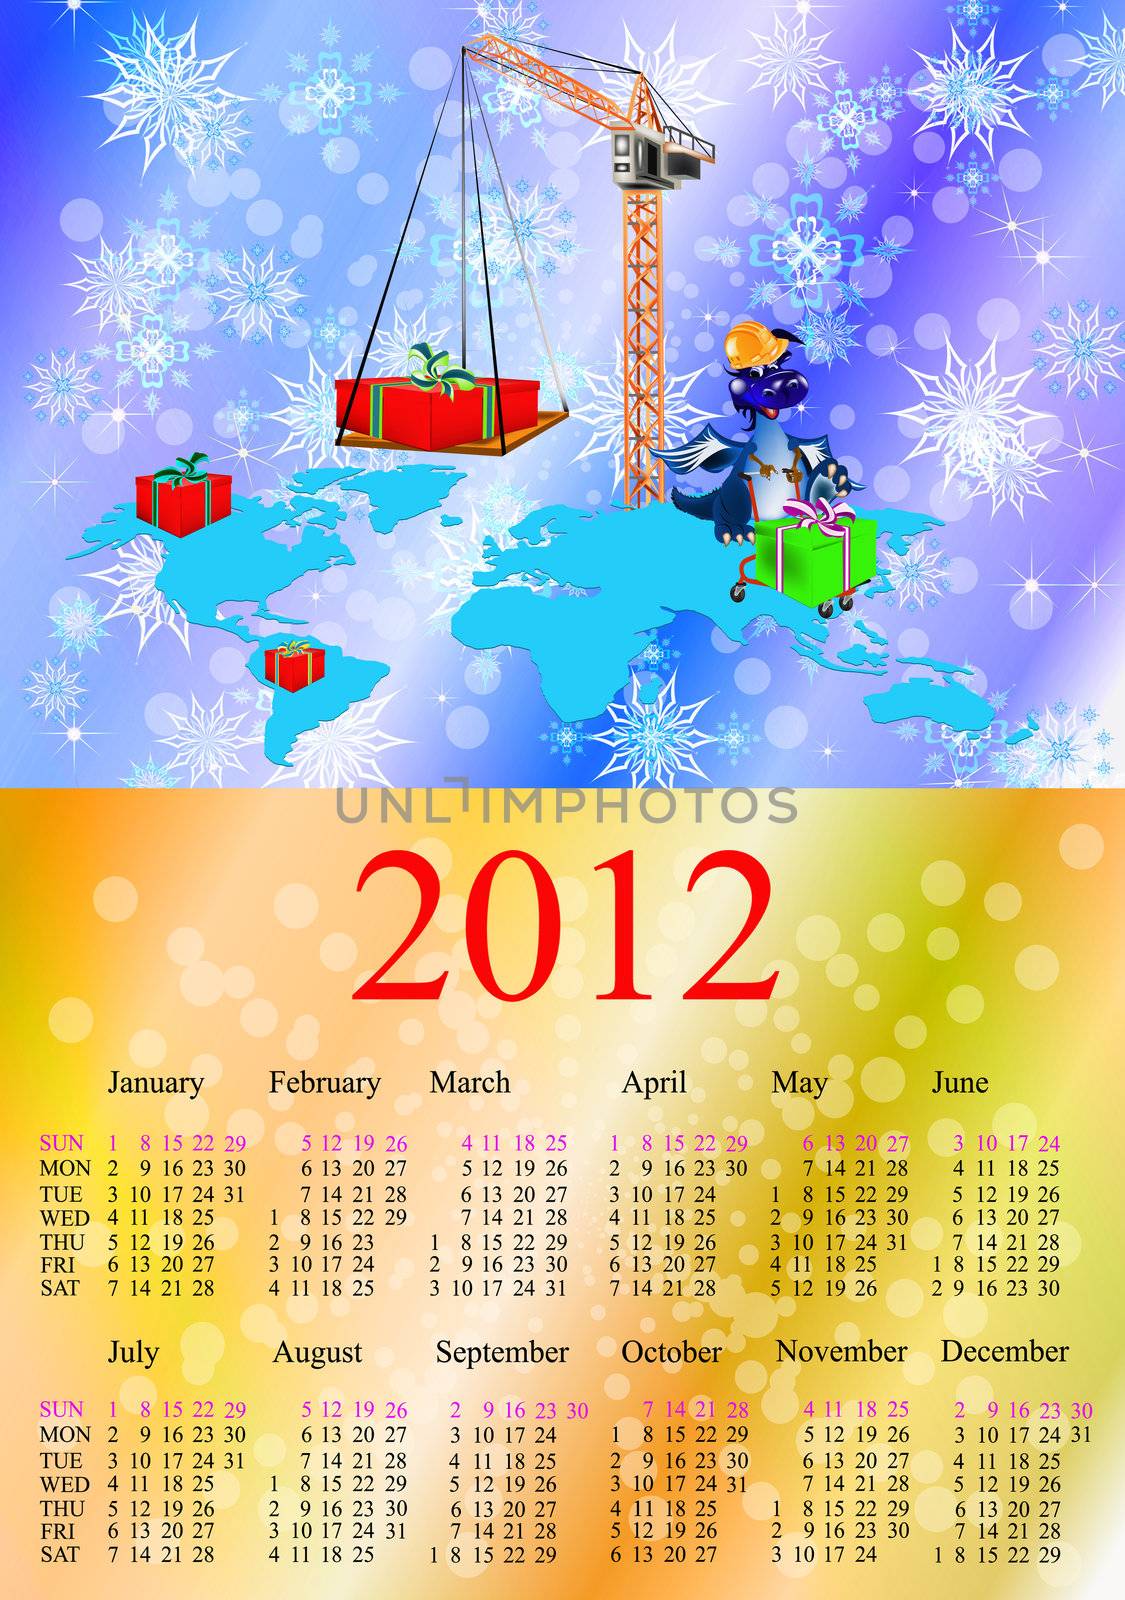 Dark blue dragon a symbol of new 2012.Calendar by sergey150770SV